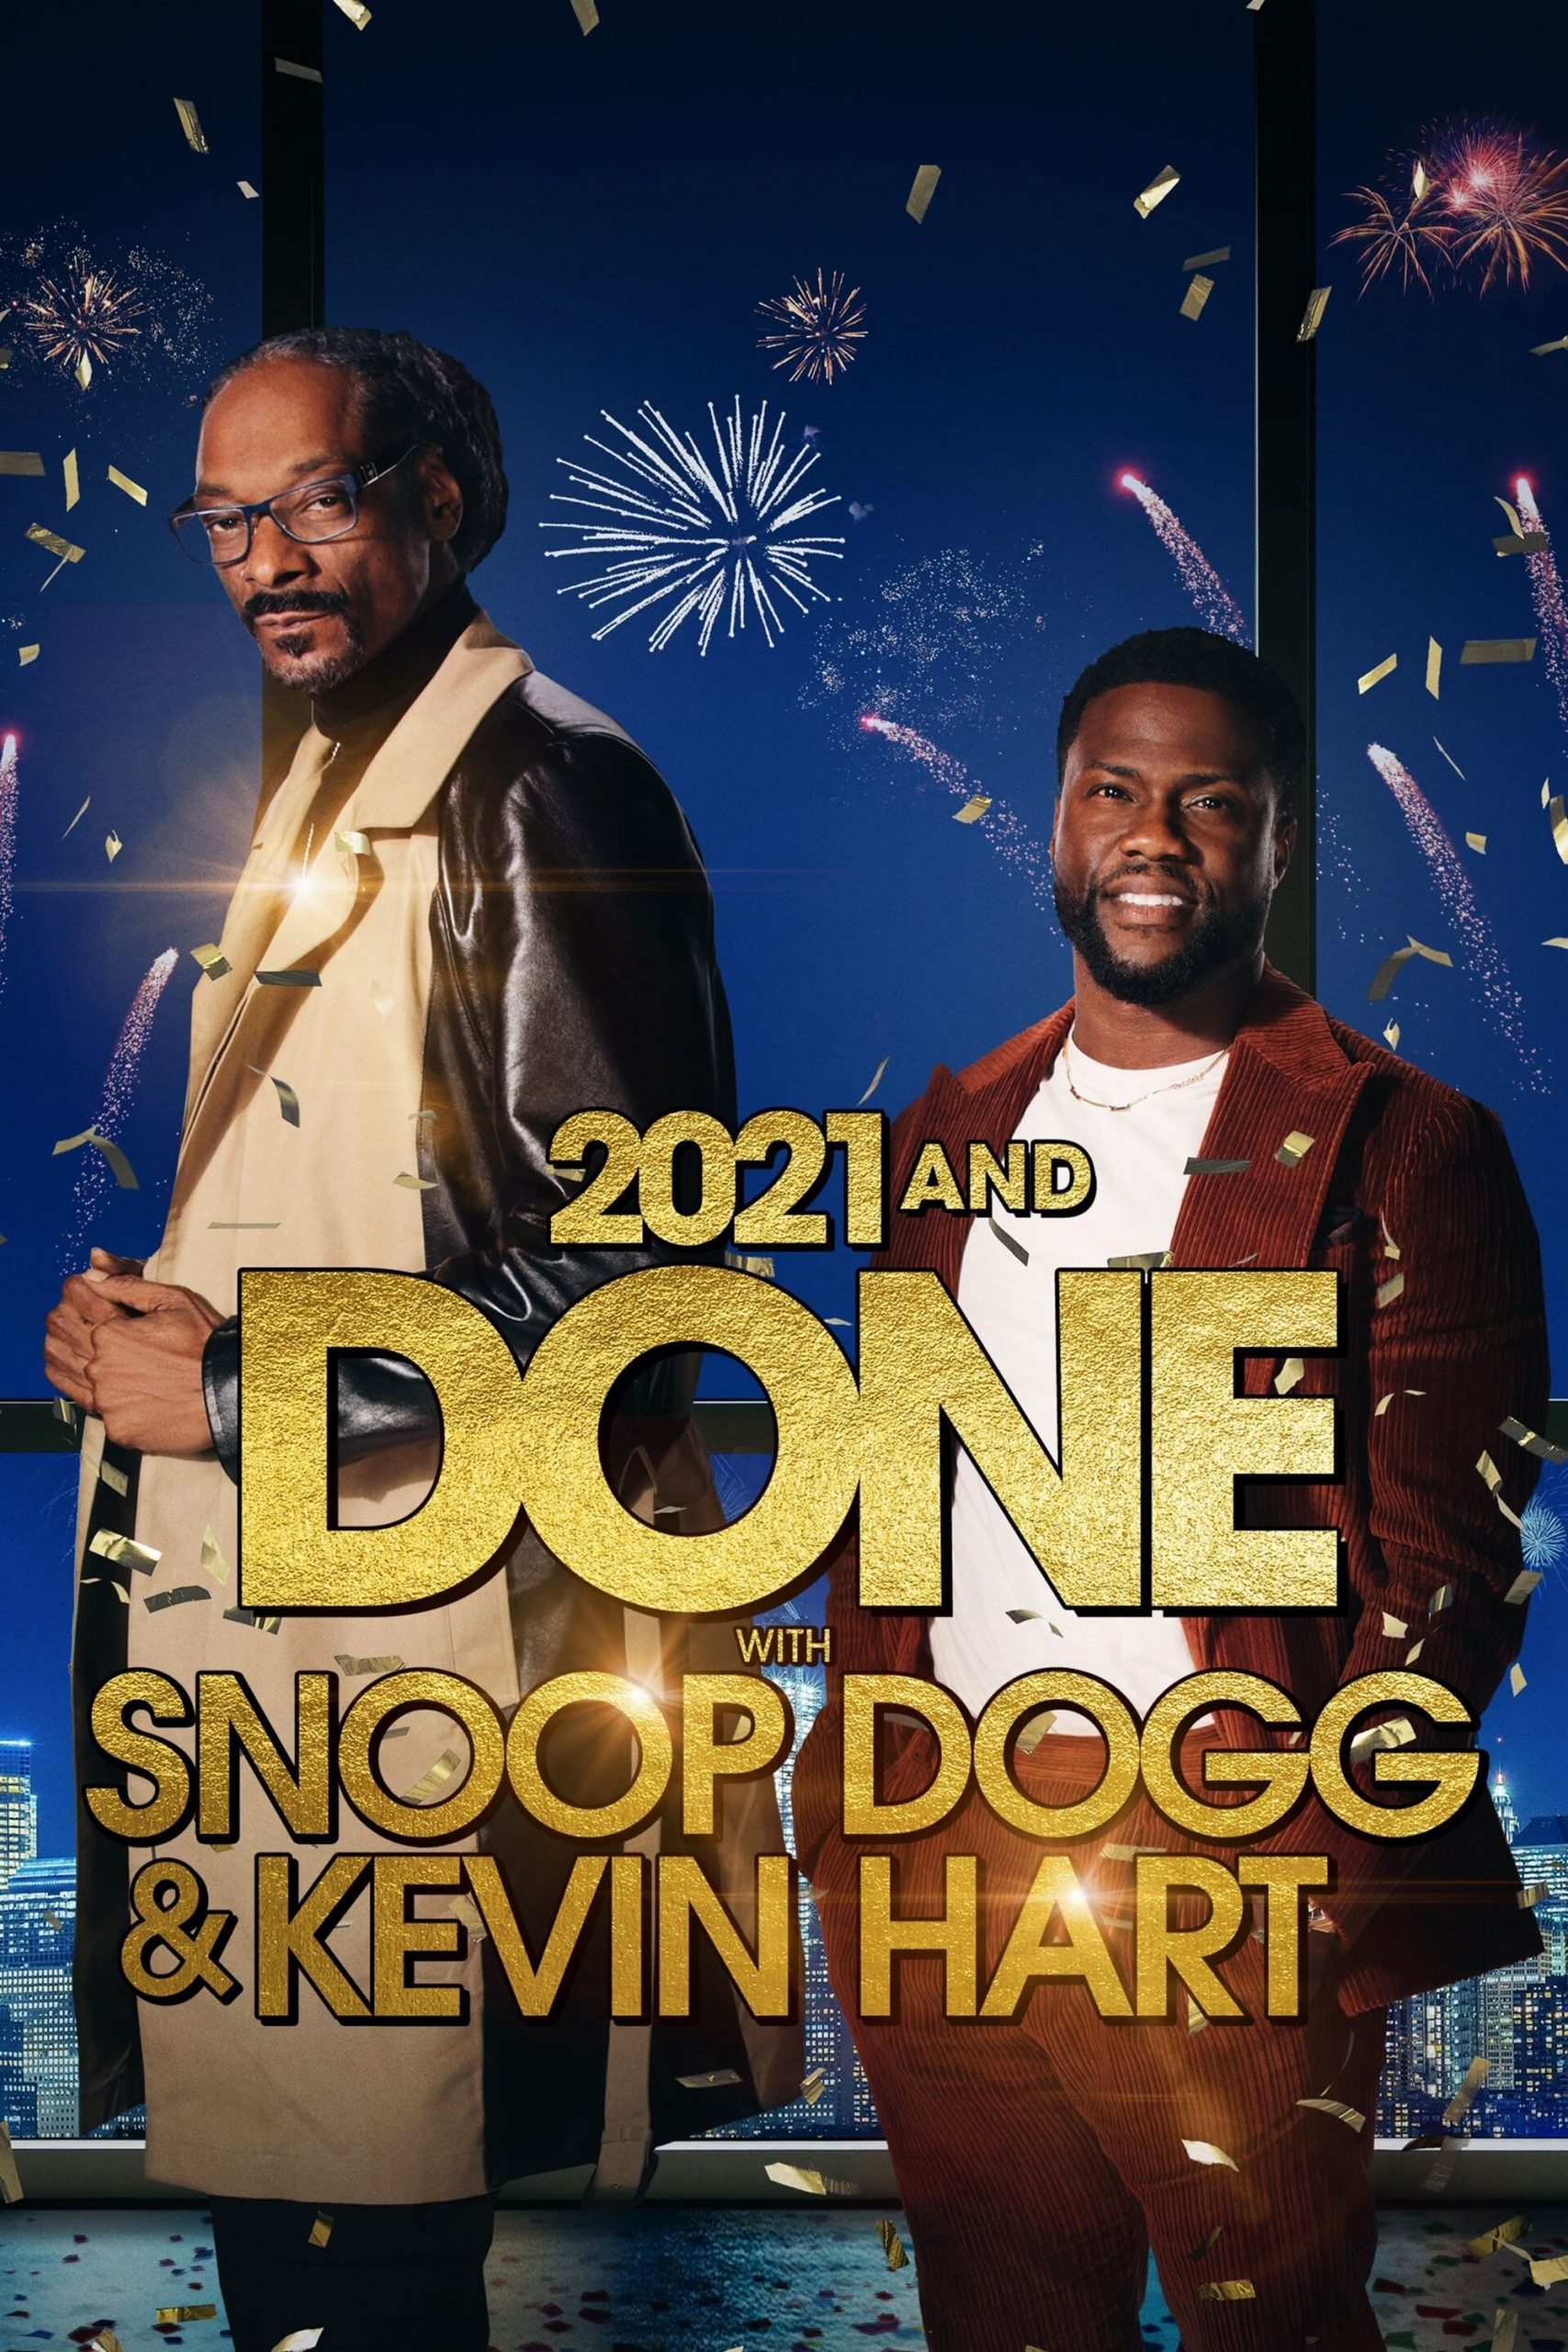 دانلود فیلم 2021 and Done with Snoop Dogg & Kevin Hart 2021